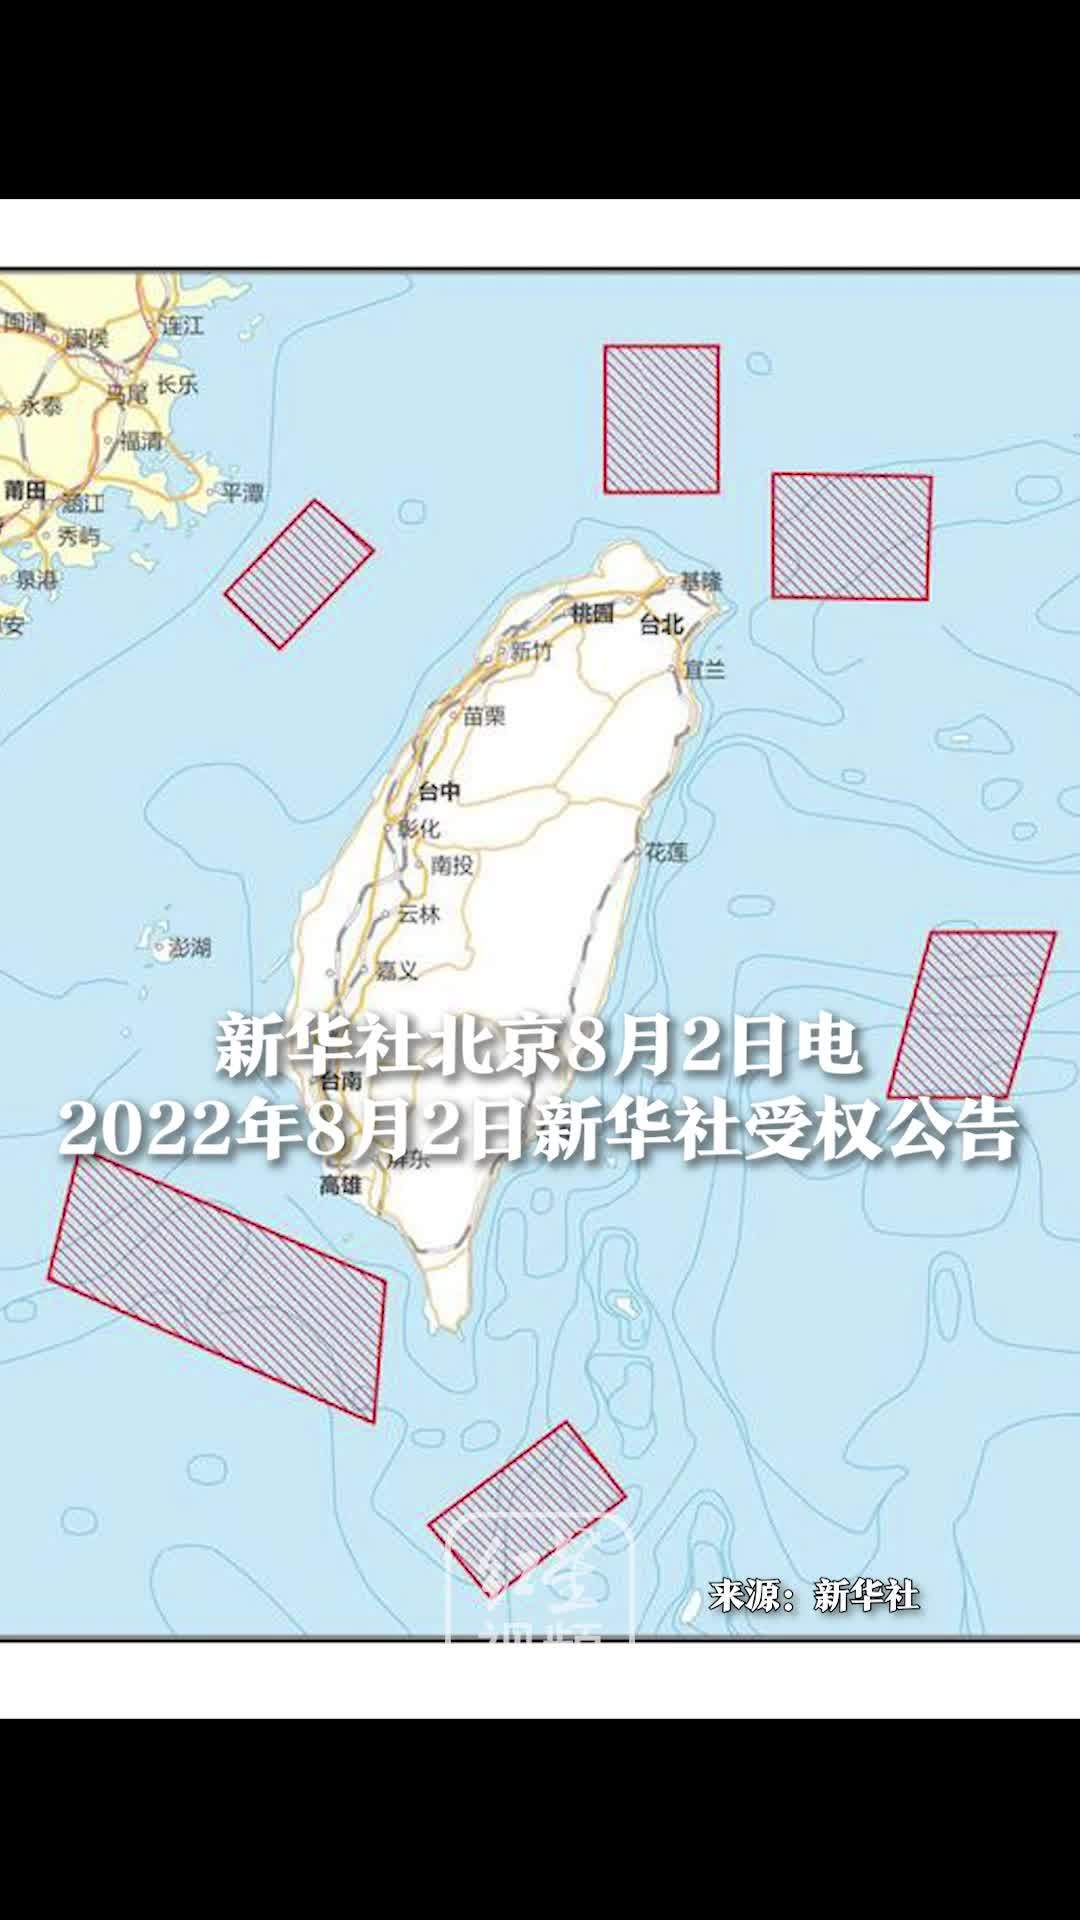 据新华社：中国人民解放军将在以下海域和空域，进行4天重要军事演训行动，并组织实弹射击